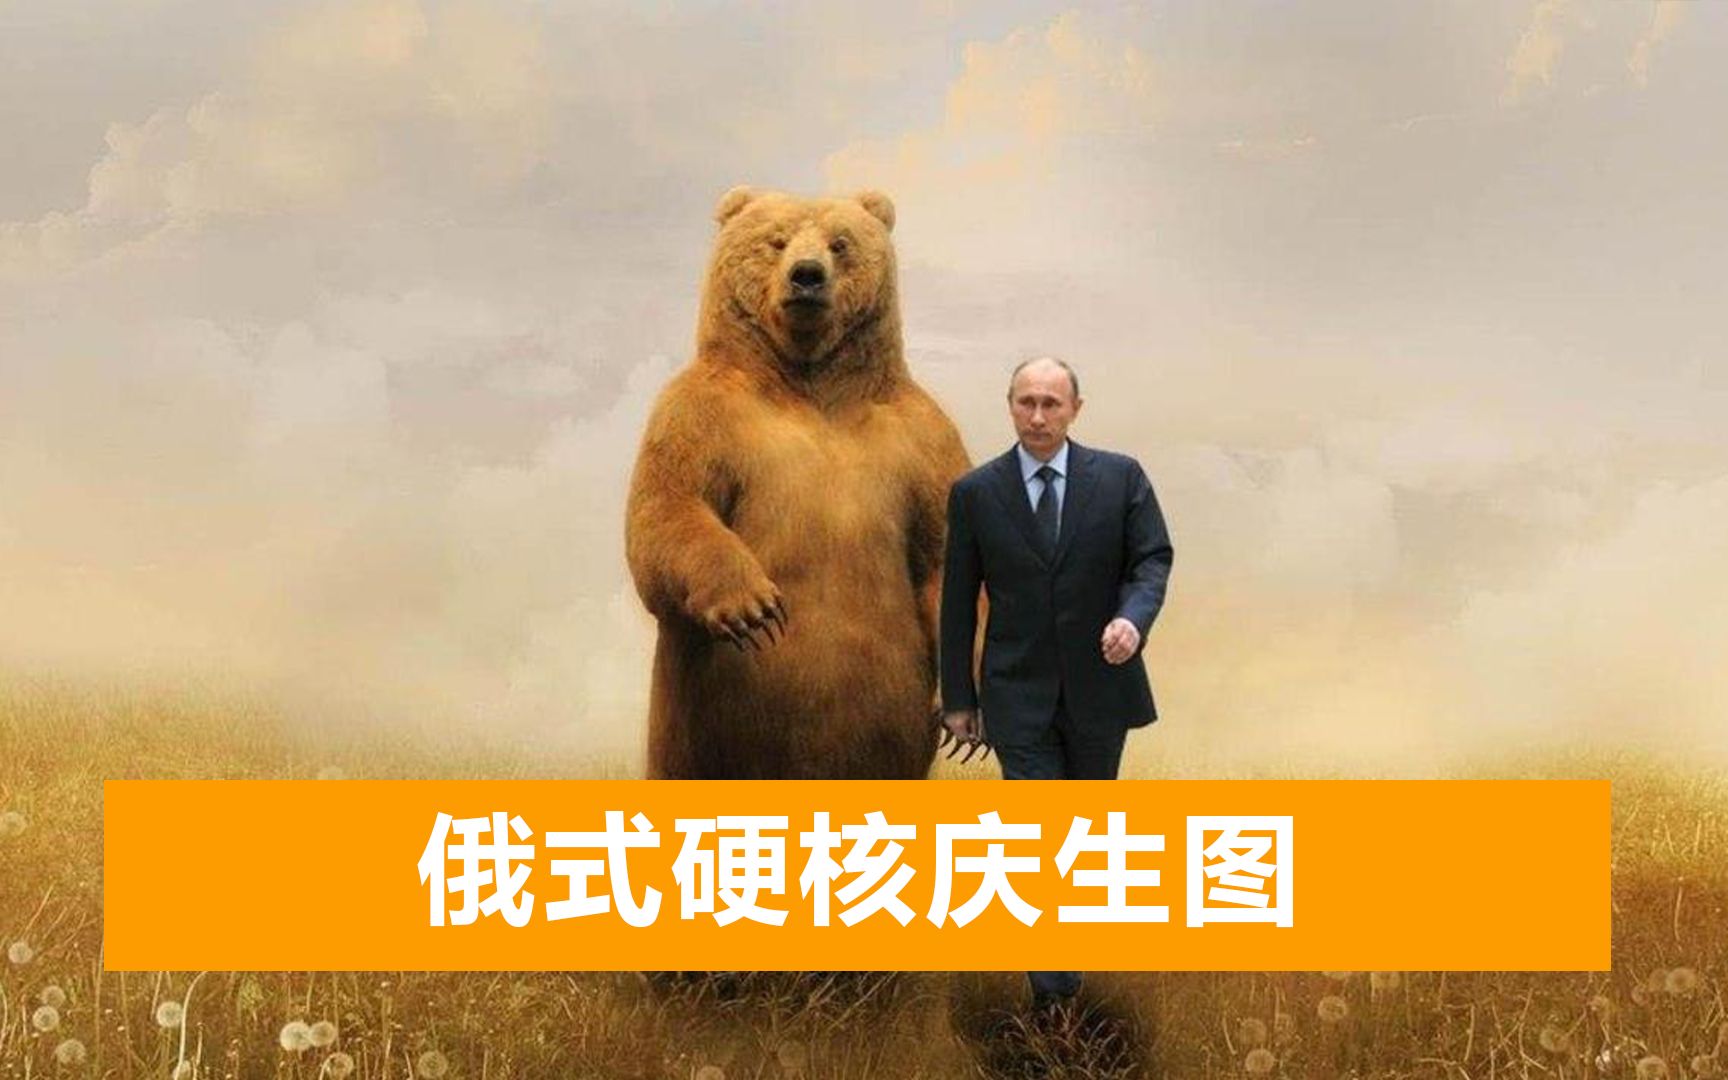 普京低调度过69岁生日，庆生图亮了：普京西装革履与棕熊同框出镜